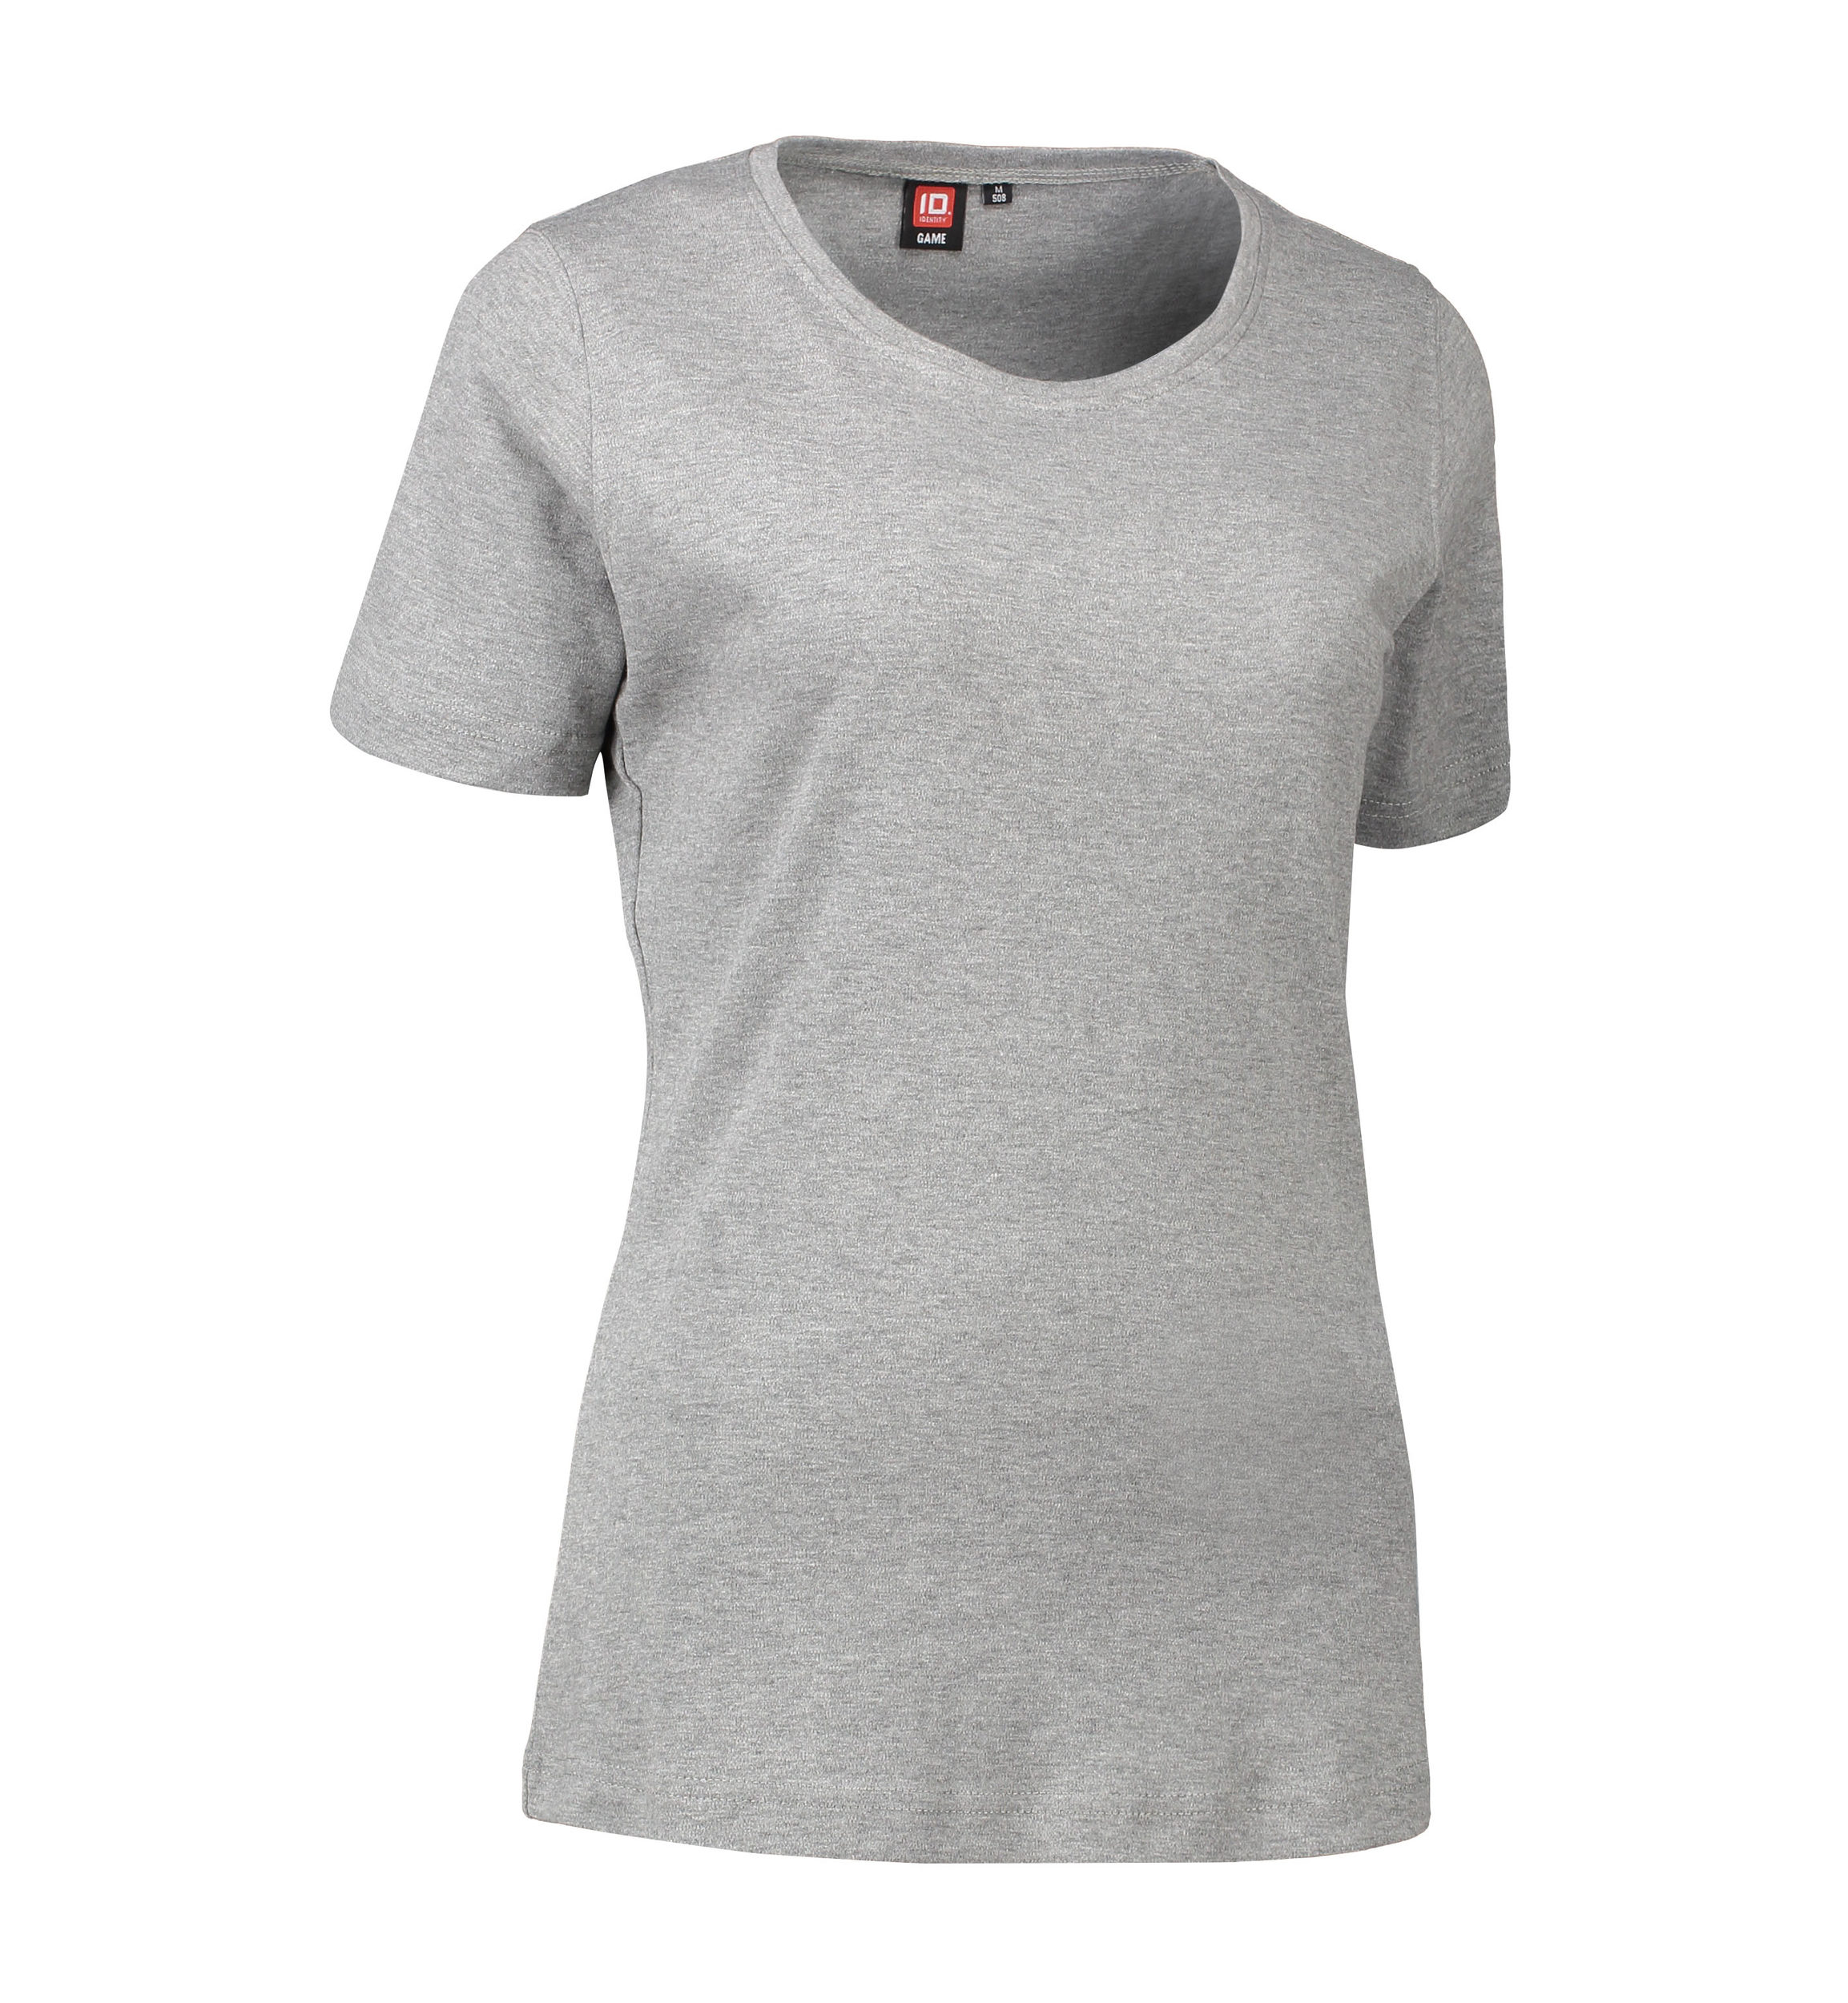 Billede af Dame t-shirt med rund hals i grå - XL hos Sygeplejebutikken.dk